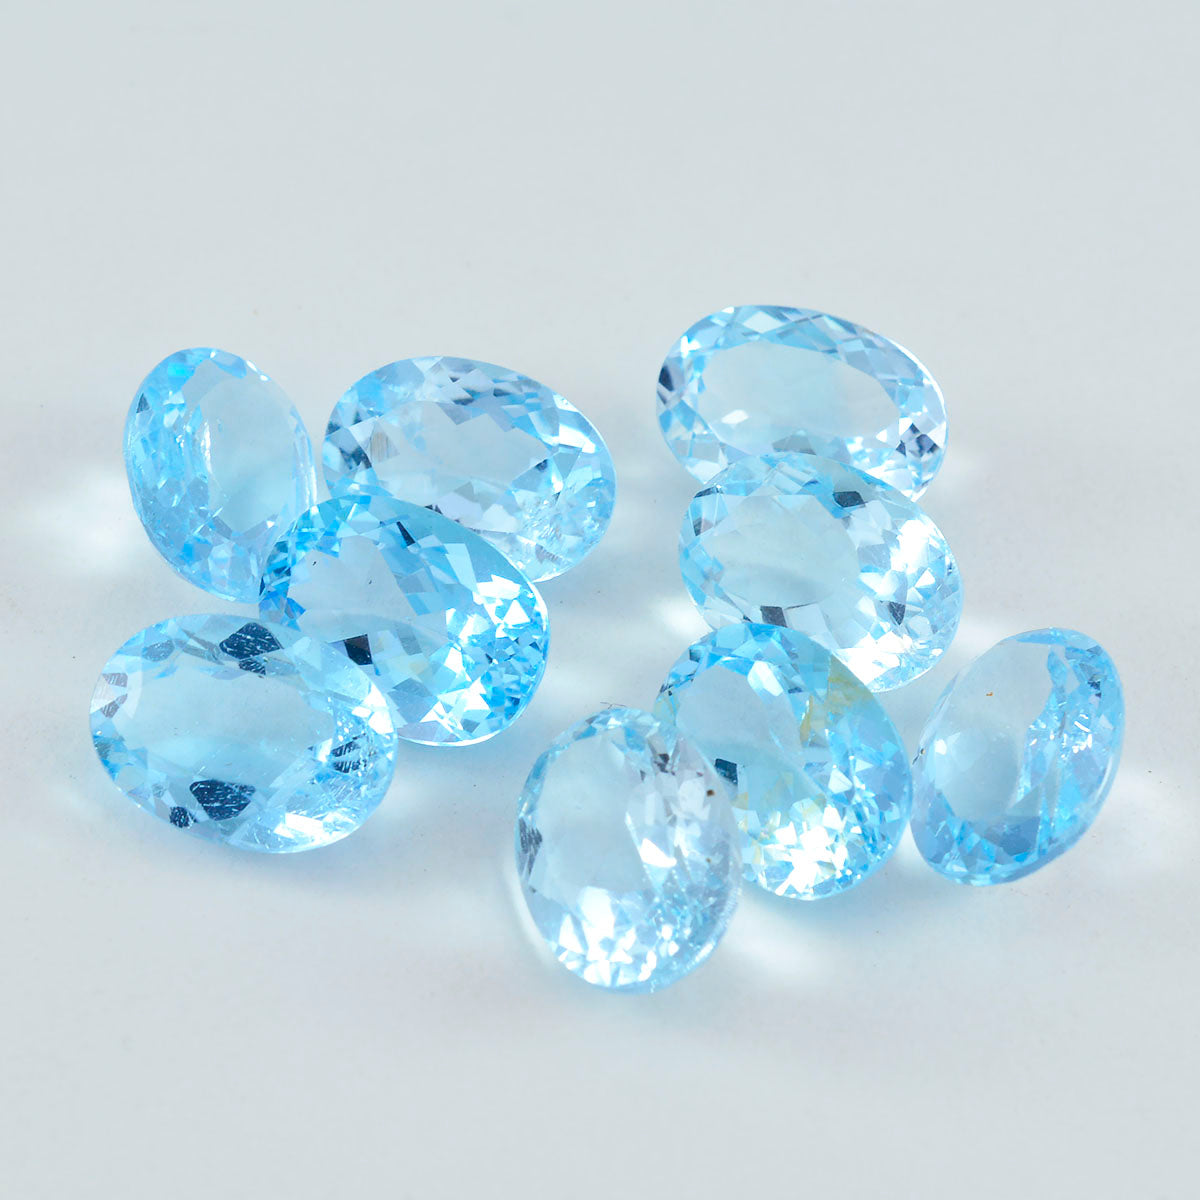 Riyogems 1 Stück echter blauer Topas, facettiert, 8 x 10 mm, ovale Form, schöne Qualität, lose Edelsteine